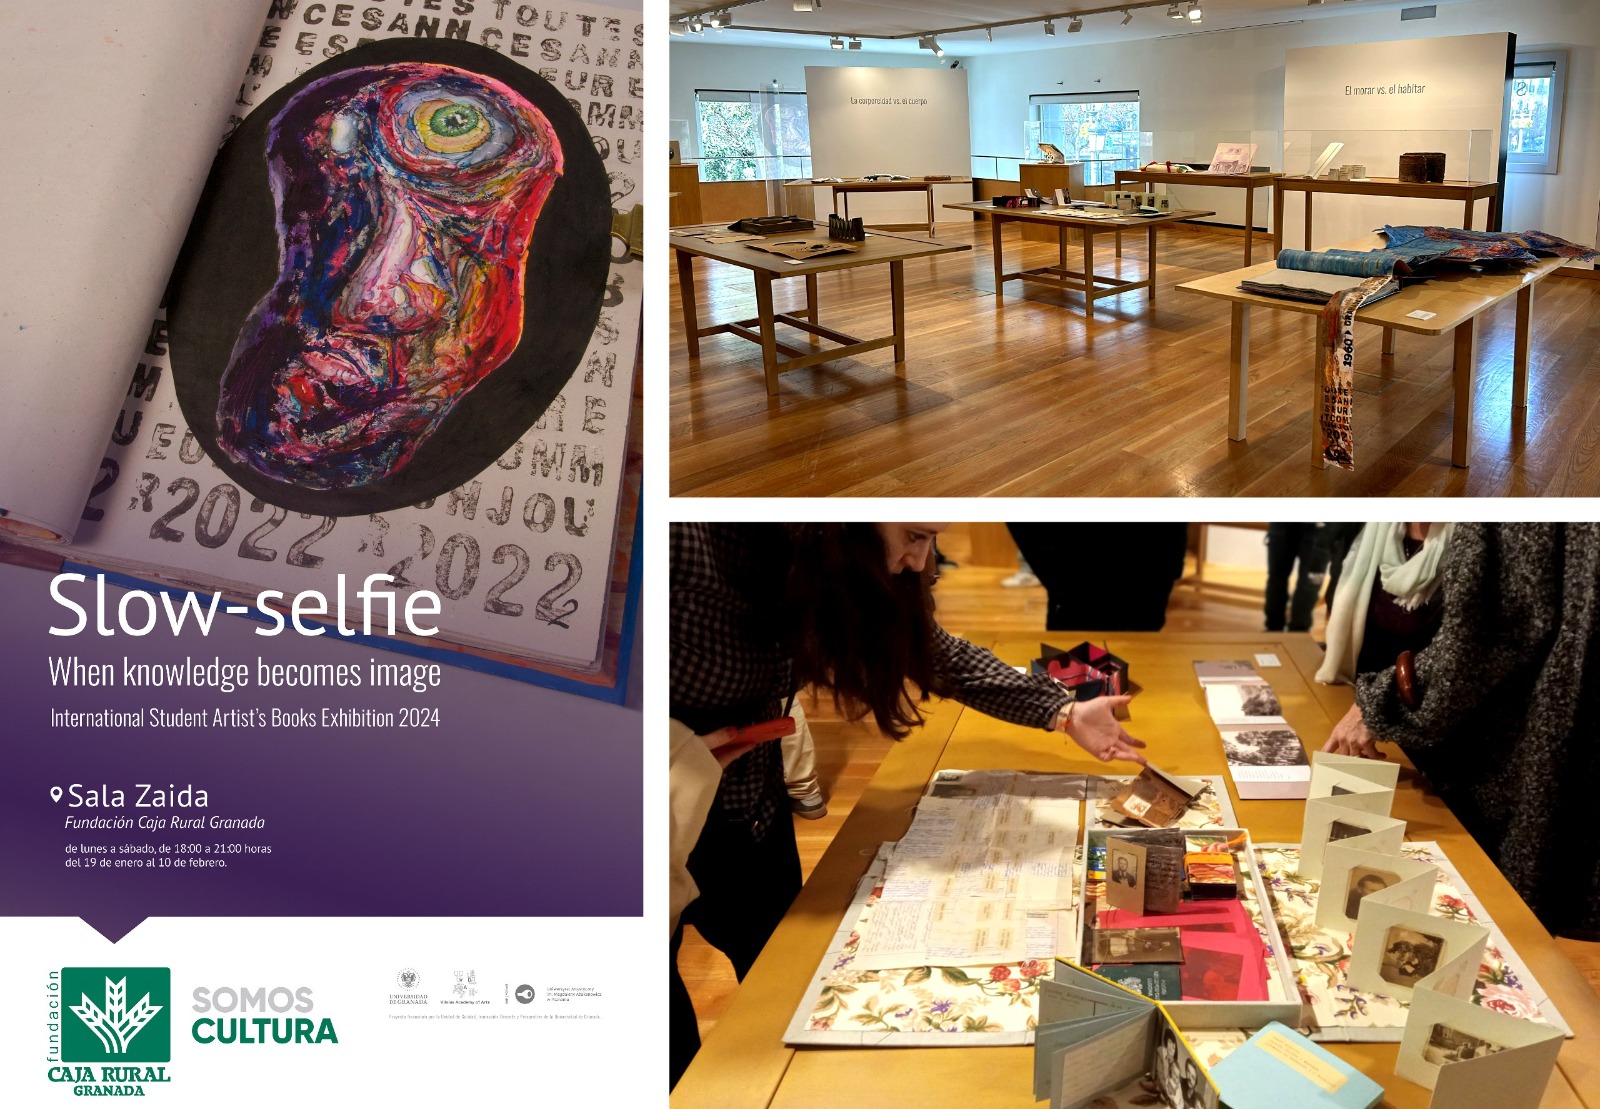 El PID “Libro de artista” desarrolla un ciclo cultural y exposición en la Sala Zaida